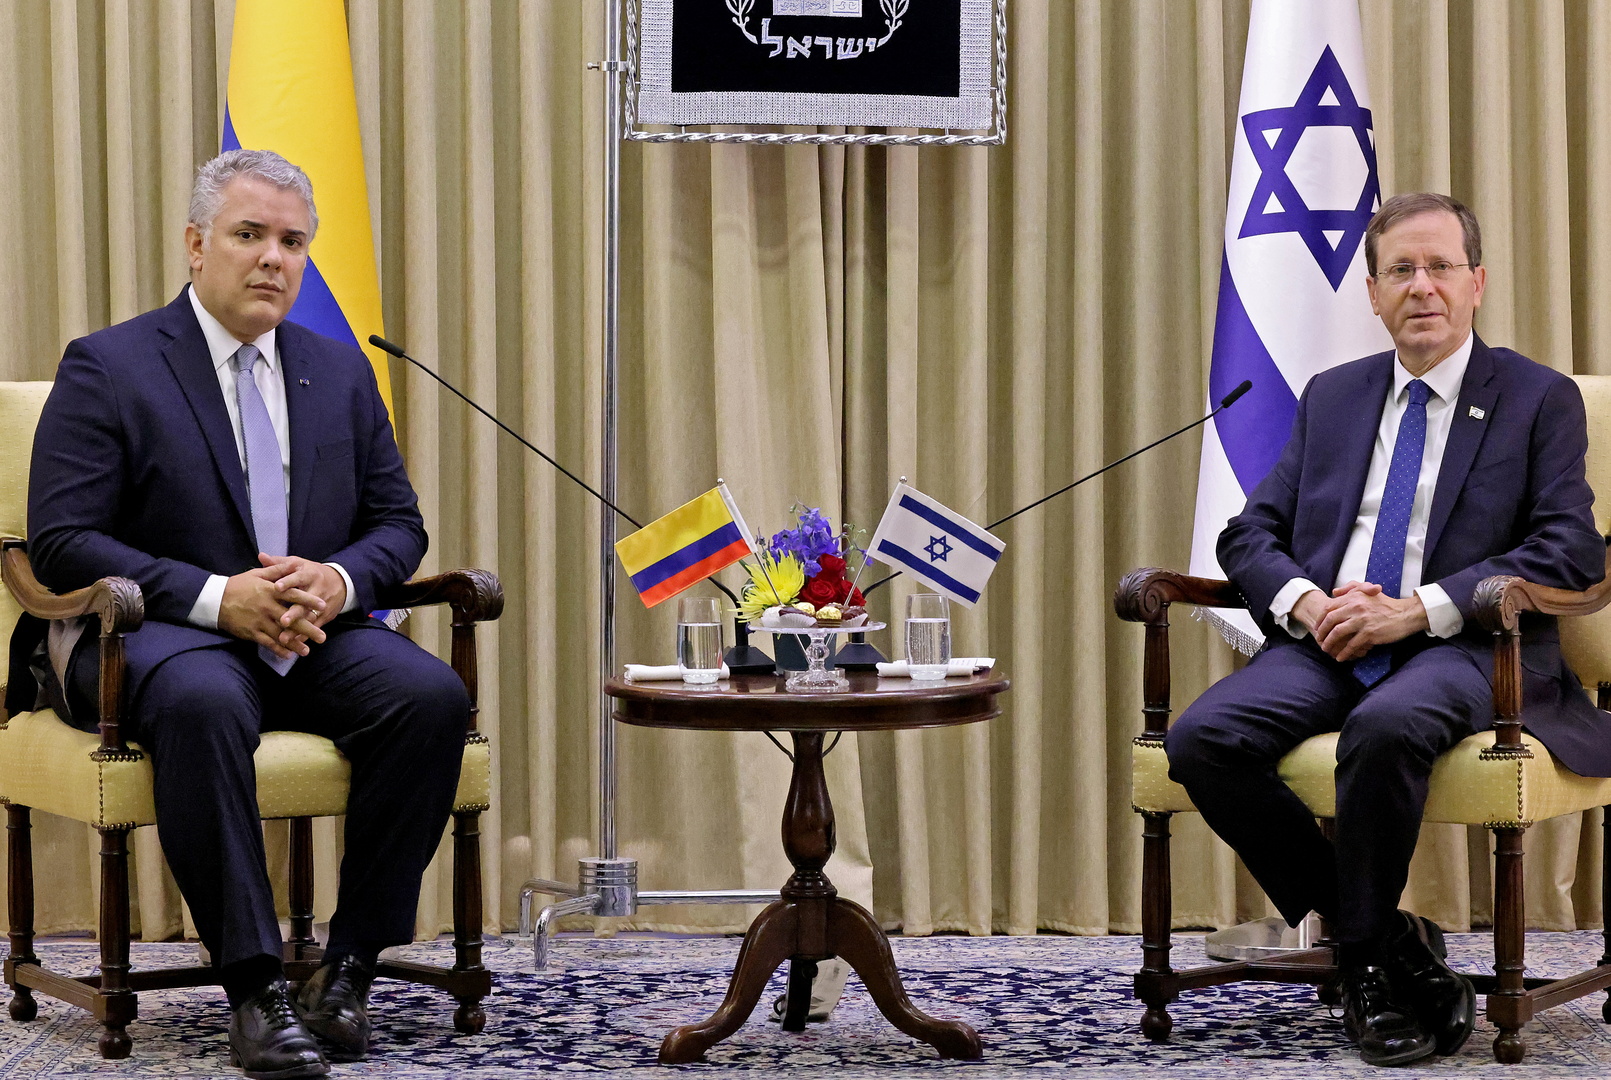 رئيس كولومبيا في القدس لافتتاح مكتب للتجارة والابتكار